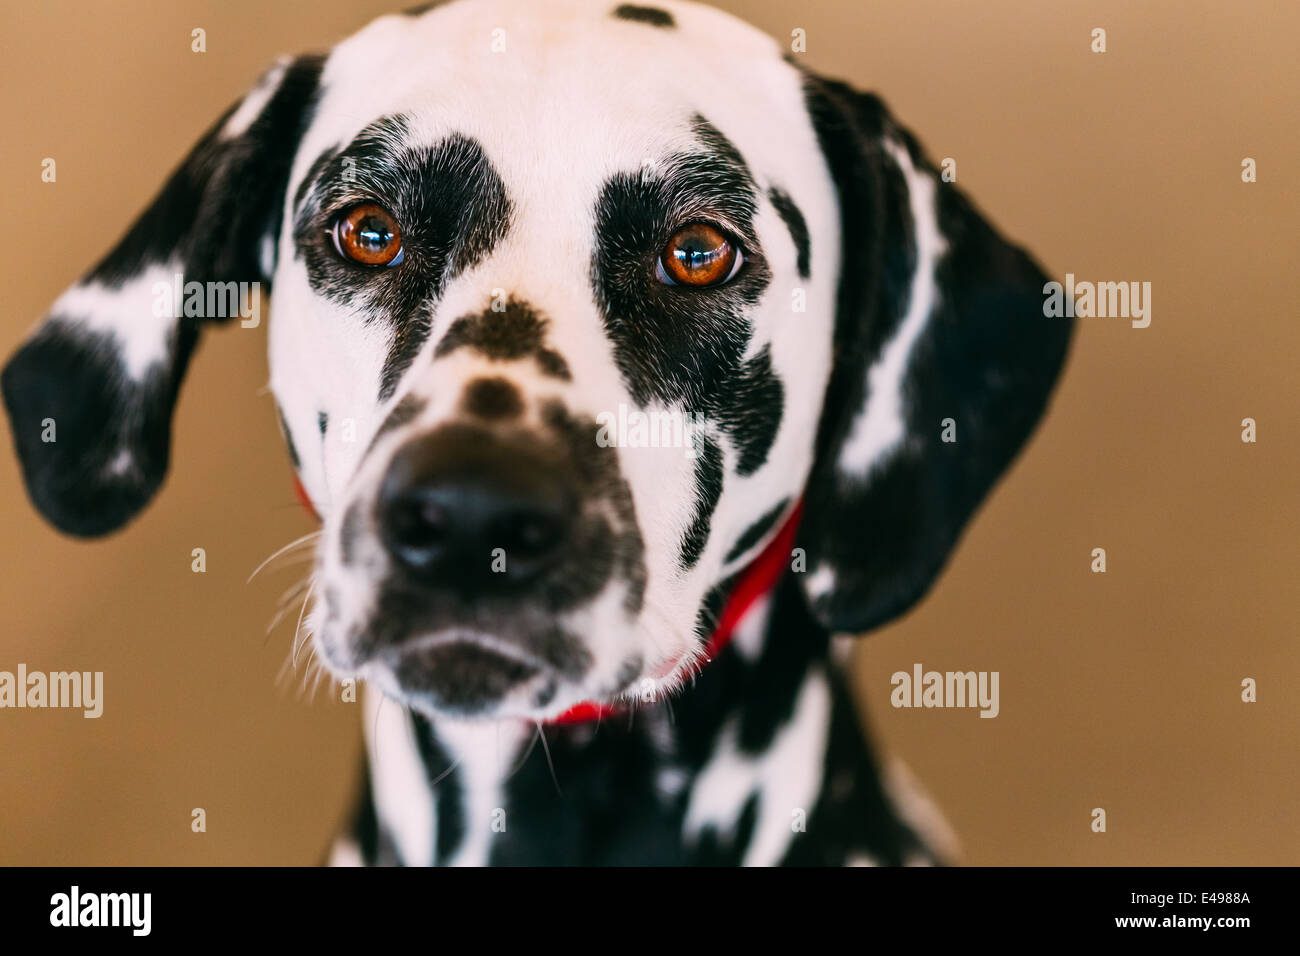 Nahaufnahme des Gesichts von einem Dalmatiner-Hund. Schöne Dalmatiner Kopf Porträt mit cute Ausdruck im Gesicht Stockfoto